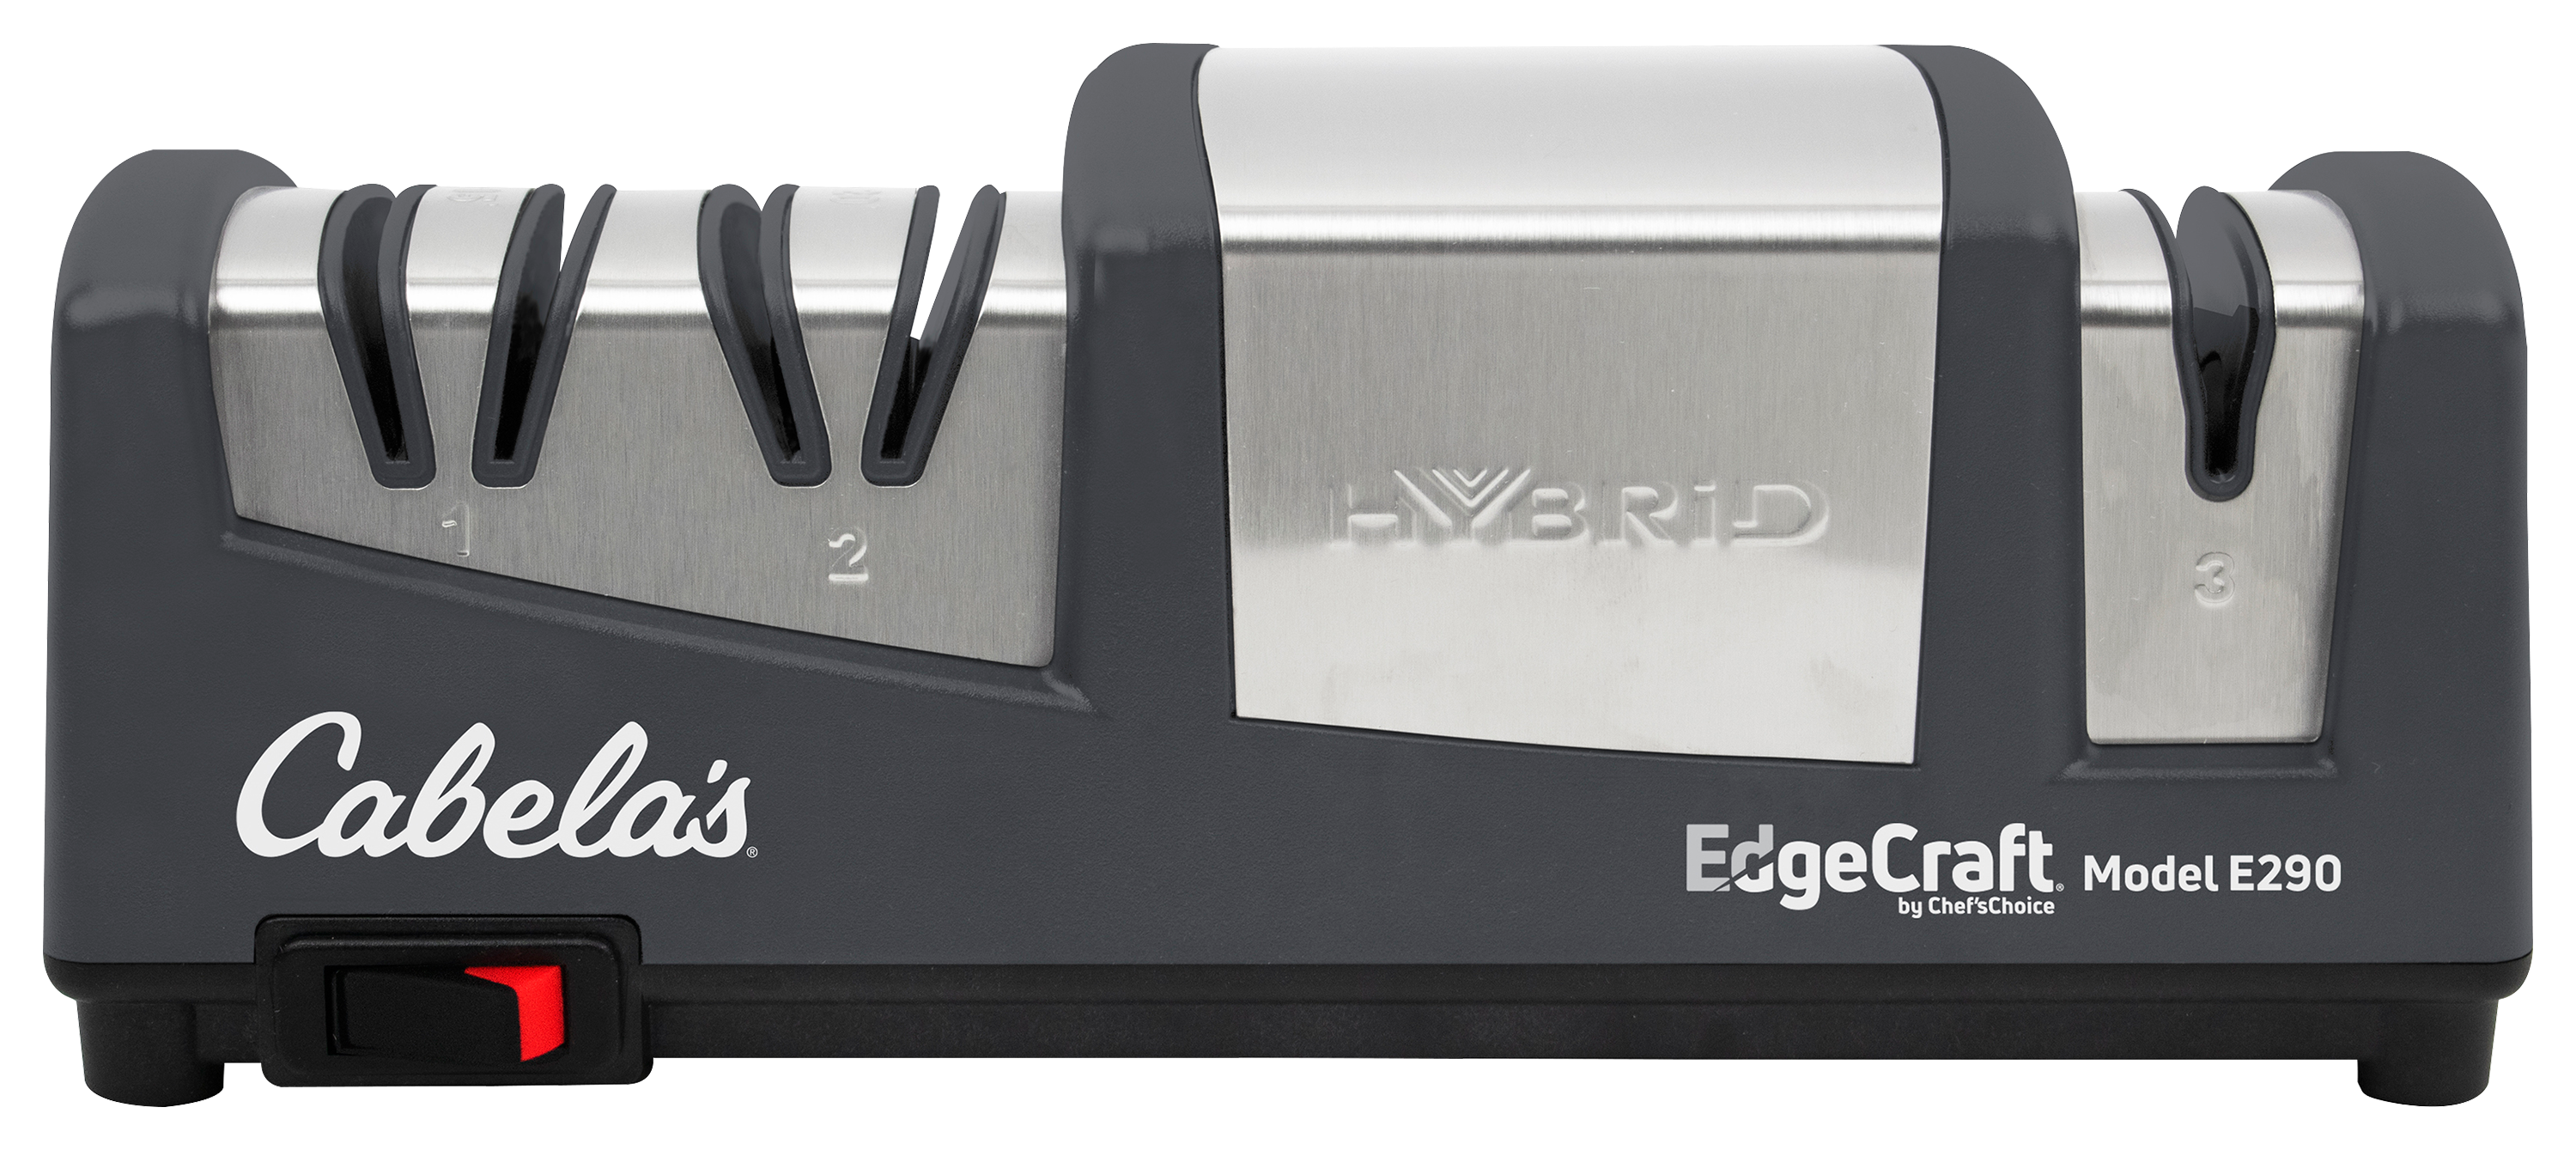 EdgeCraft AngleSelect Hybrid Knife Sharpener